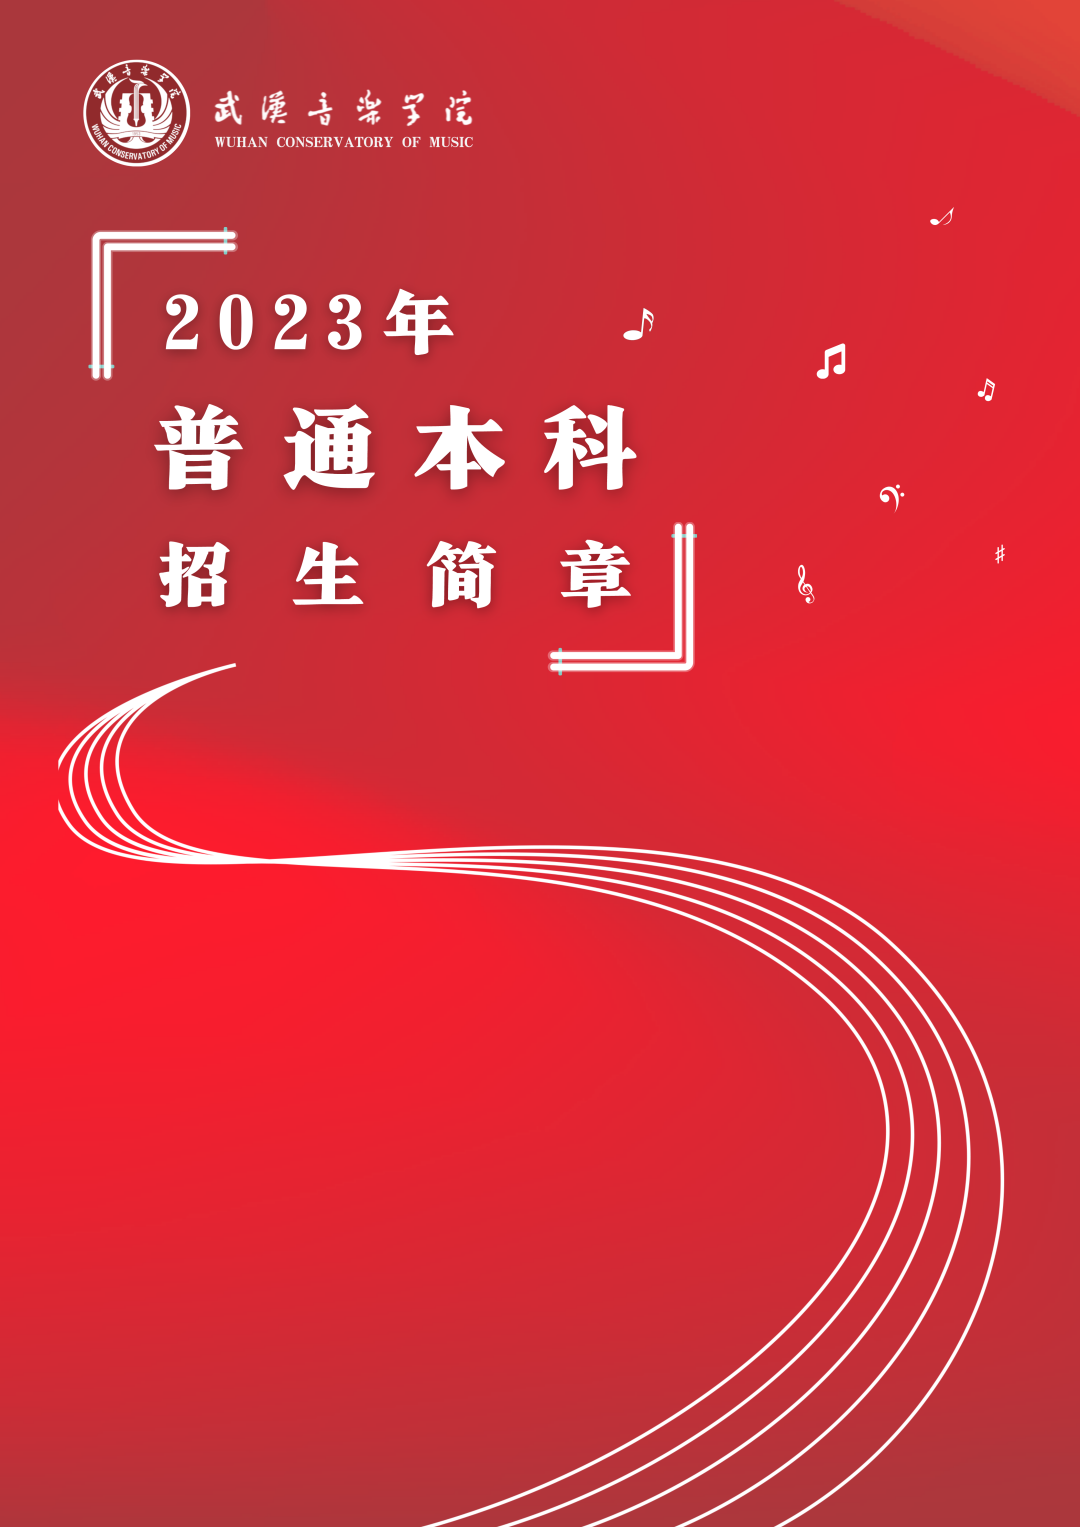 校考 | 武汉音乐学院2023招生简章、大纲、曲目库发布 (http://www.xifumi.com/) 校内新闻 第1张